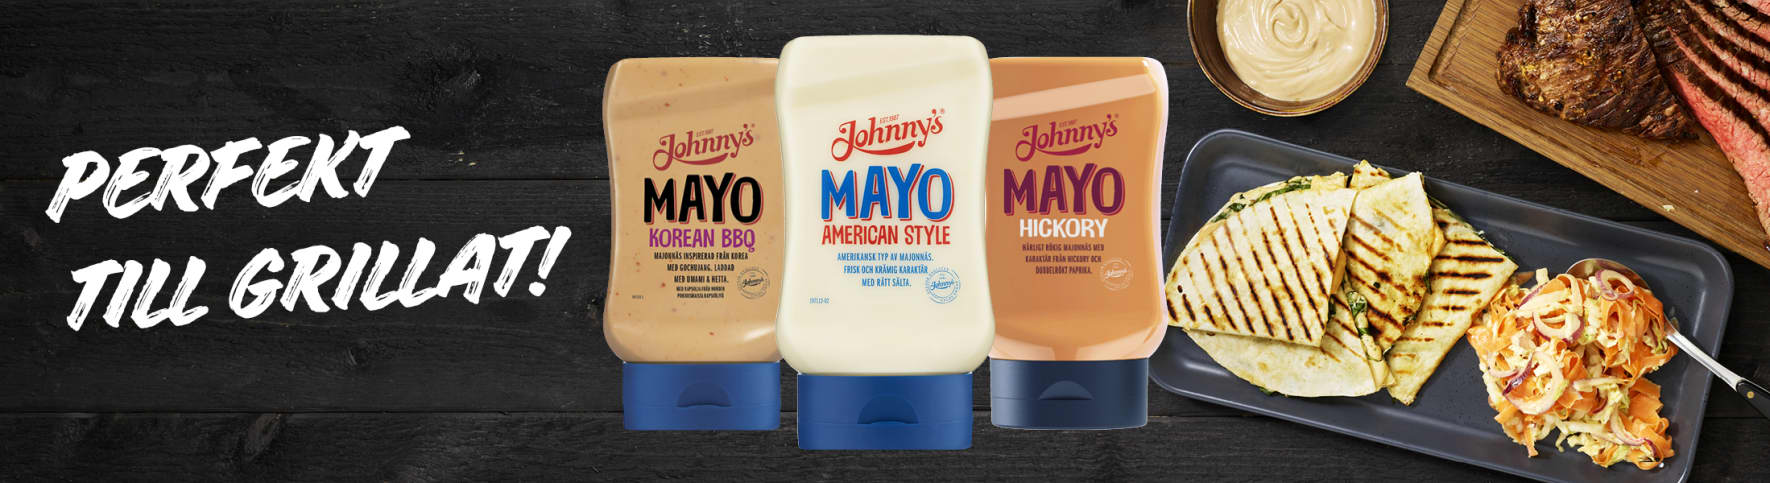 Johnny's mayo